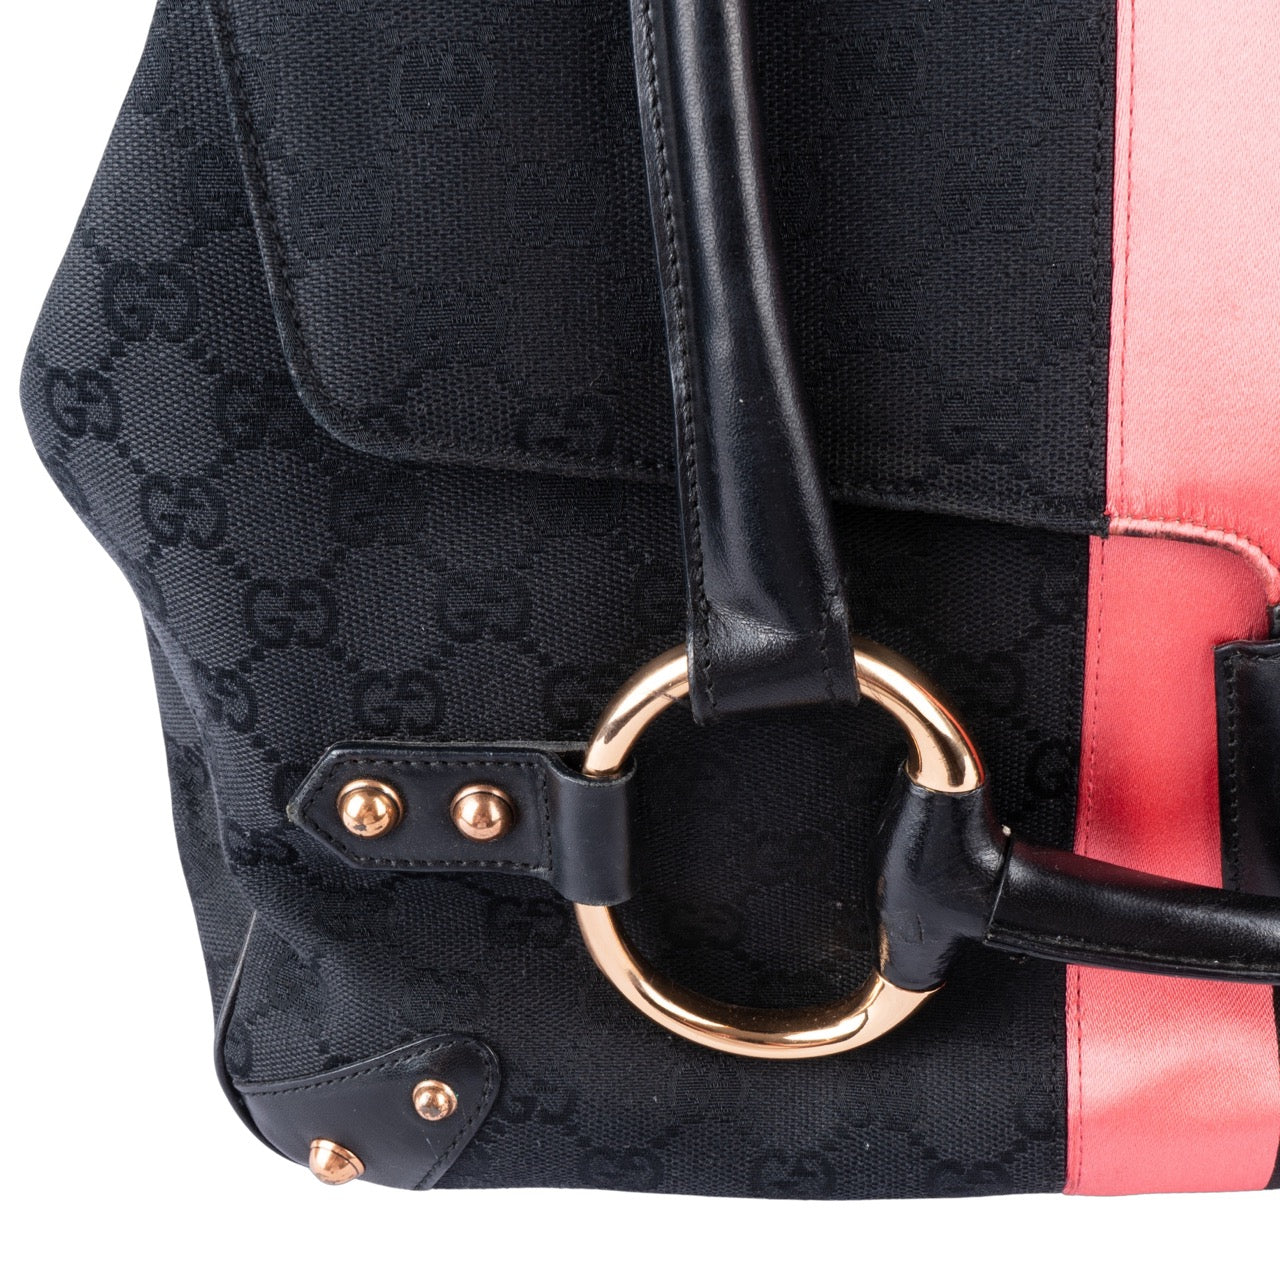 Gucci x Tom Ford Canvas Monogram Horsebit Handbag